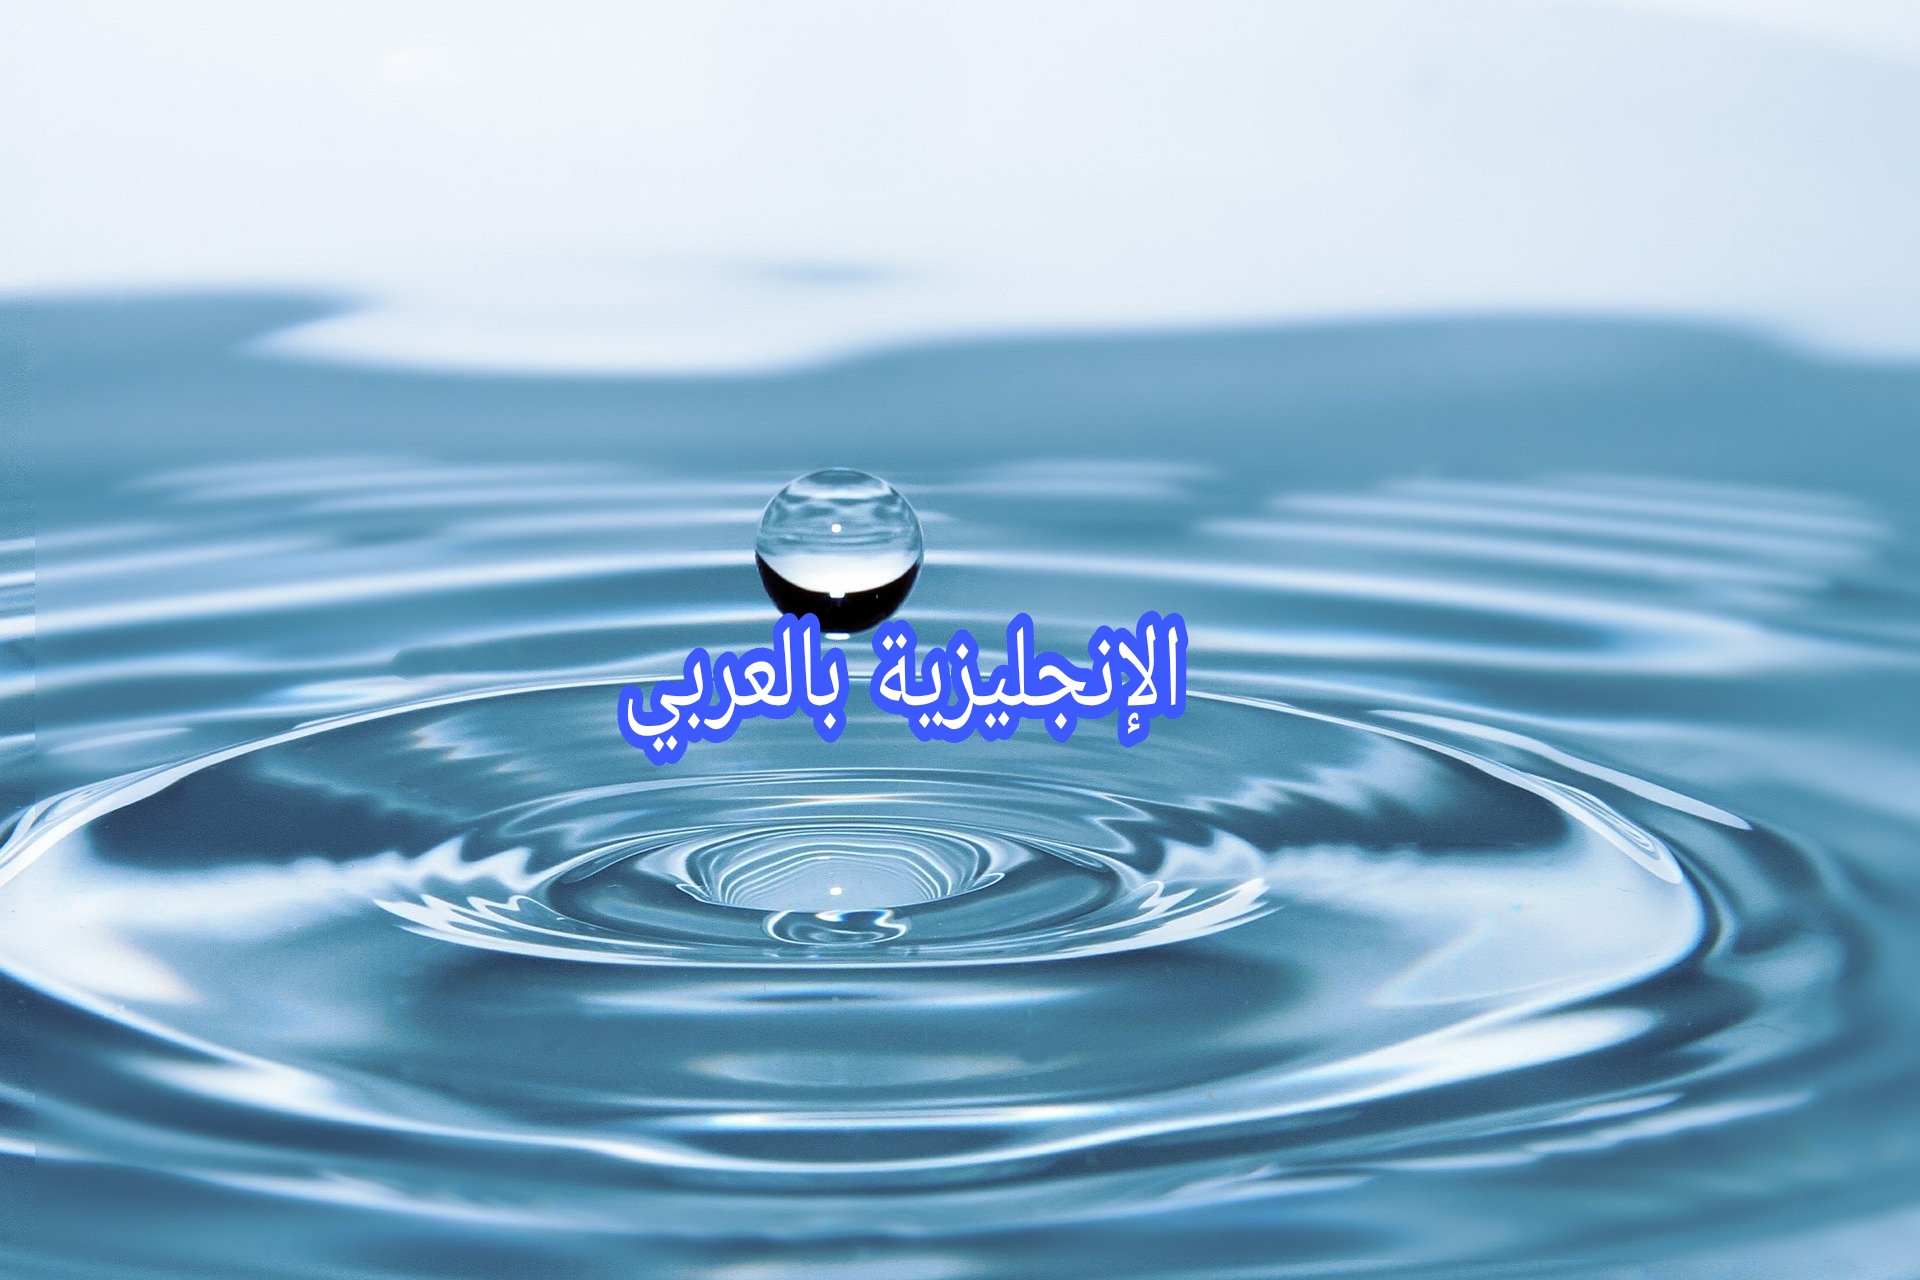 المياه بالإنجليزي والعربي